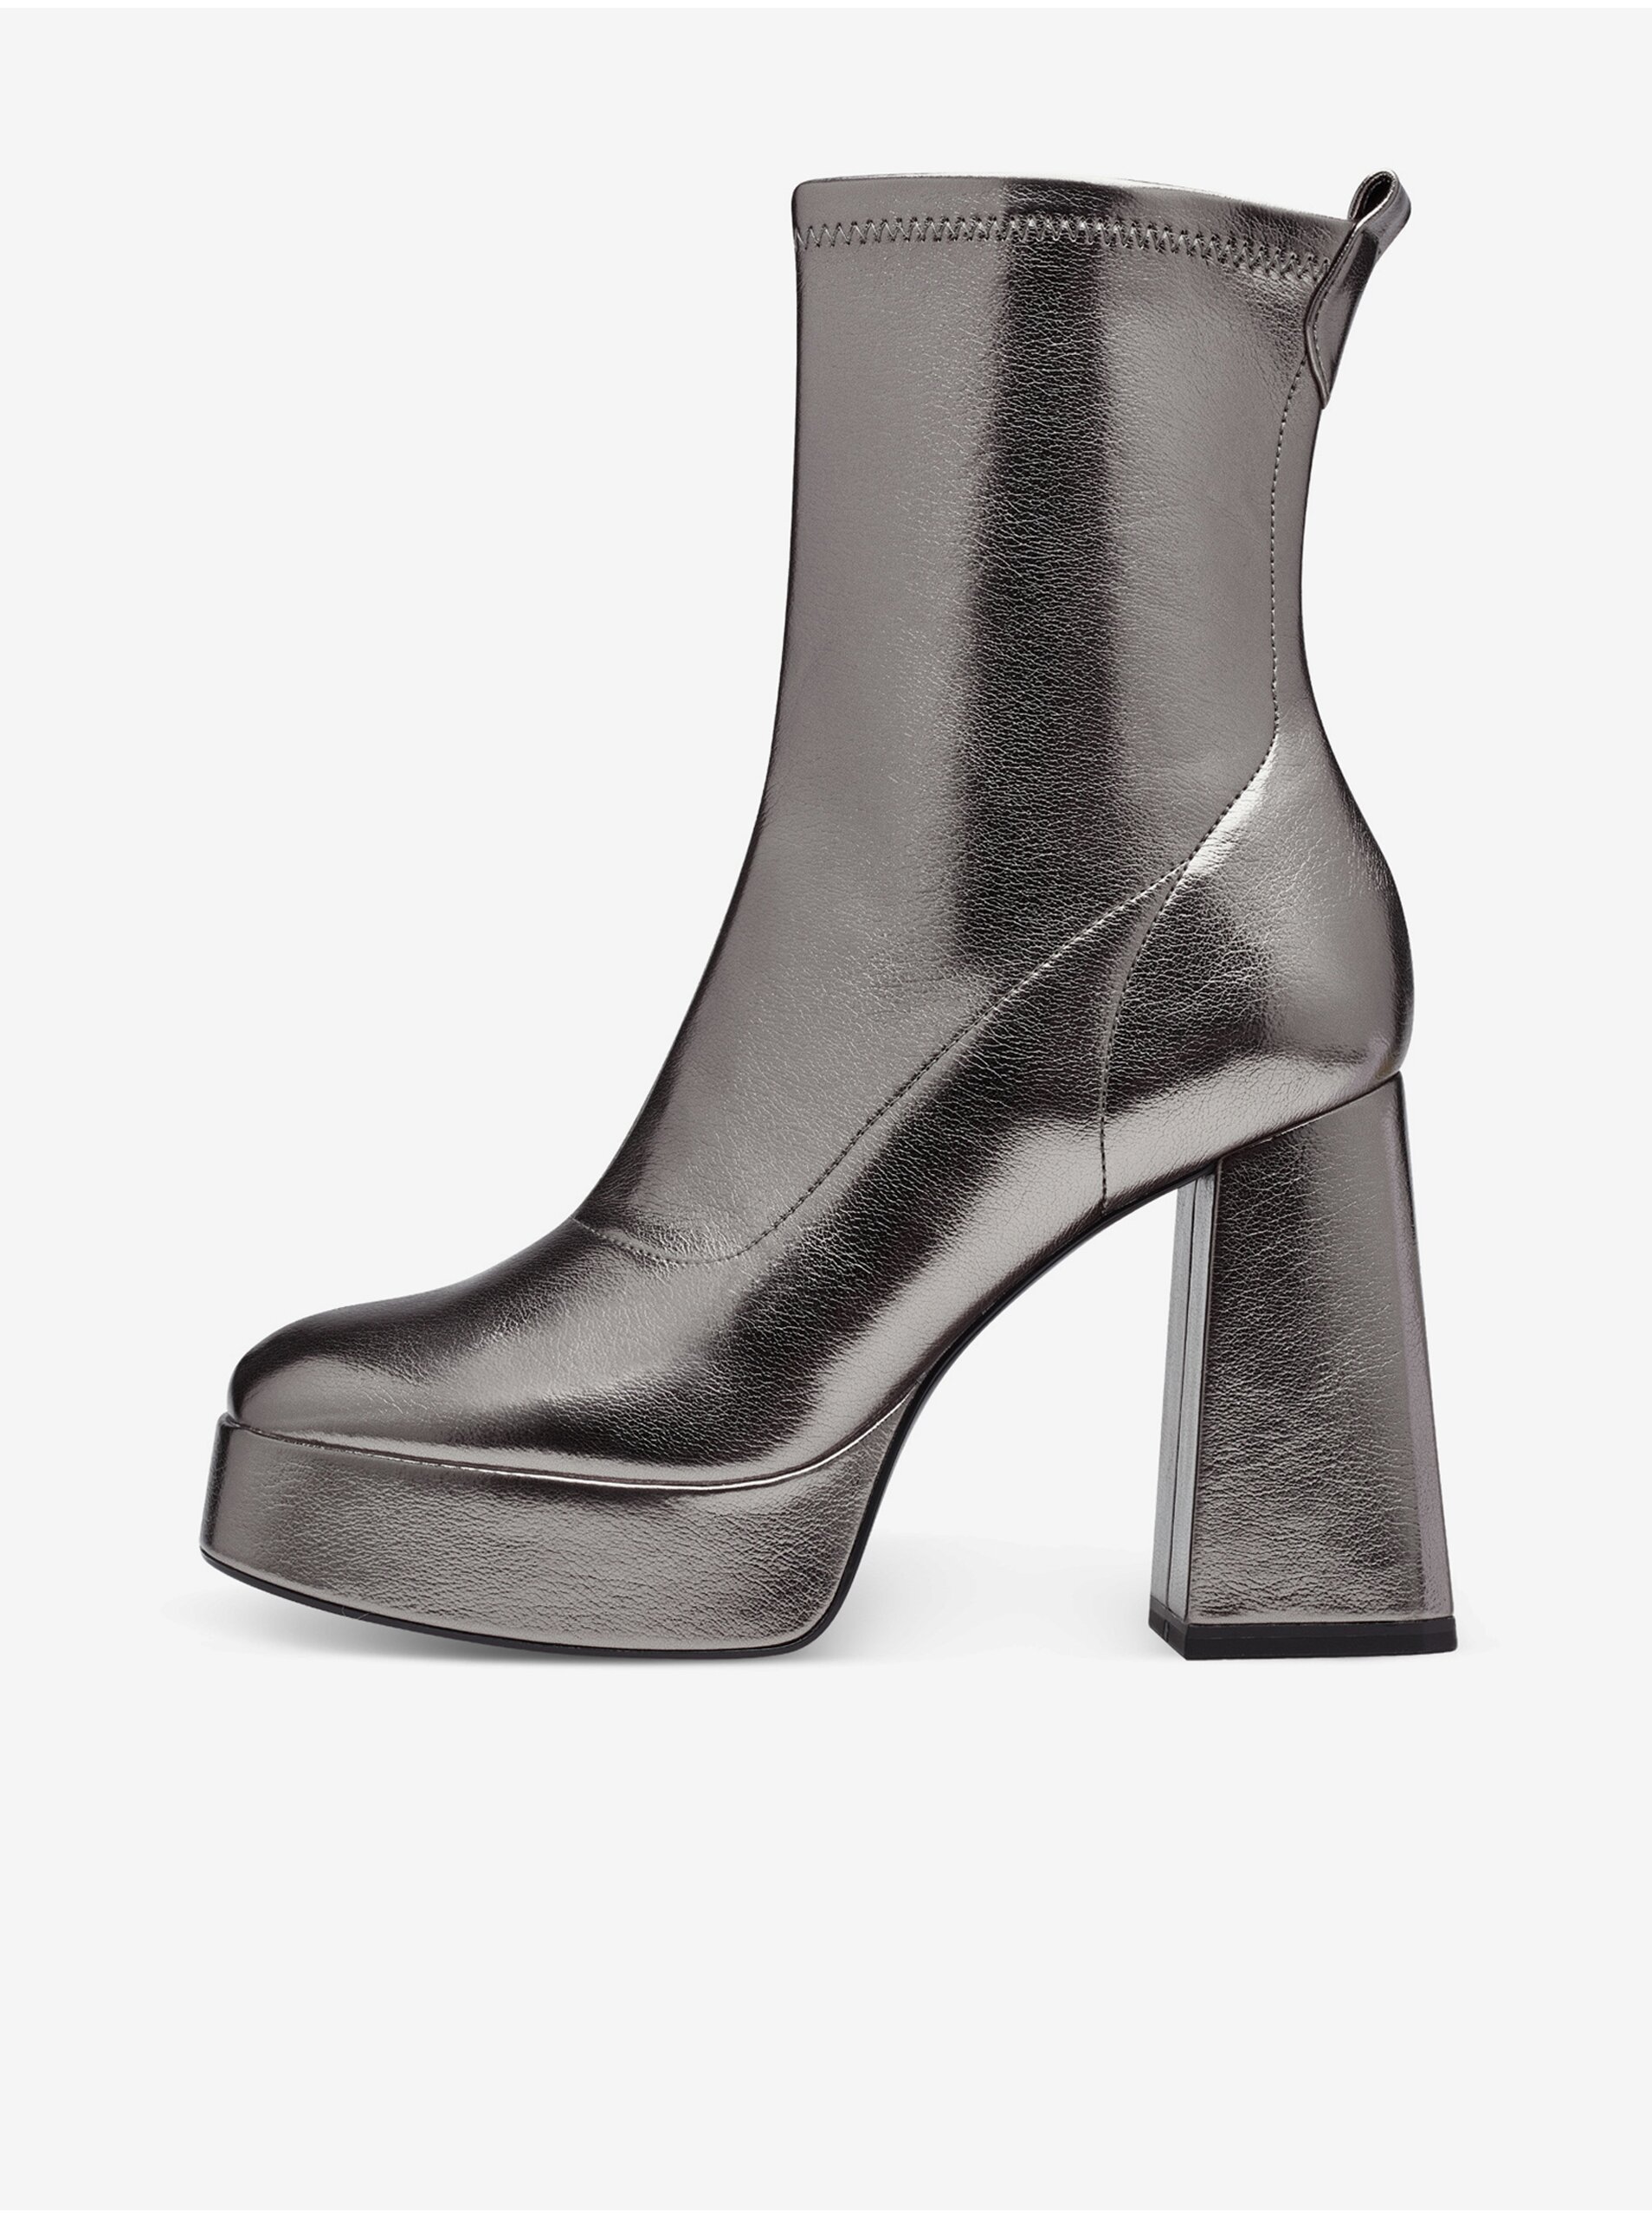 E-shop Dámské kotníkové boty na podpatku ve stříbrné barvě Tamaris